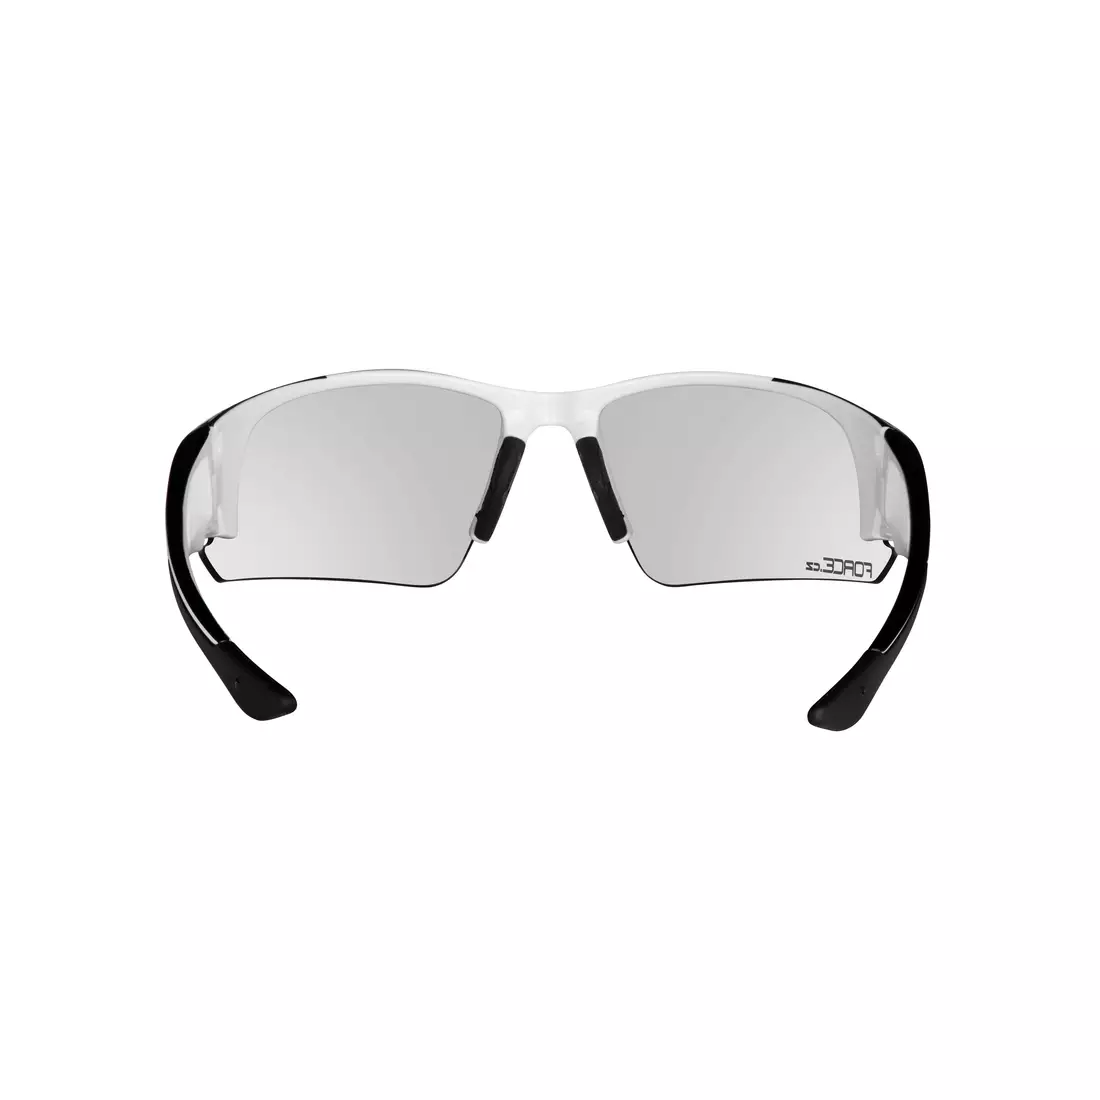 FORCE Sportovní fotochromatické brýle CALIBRE, Bílý 91056